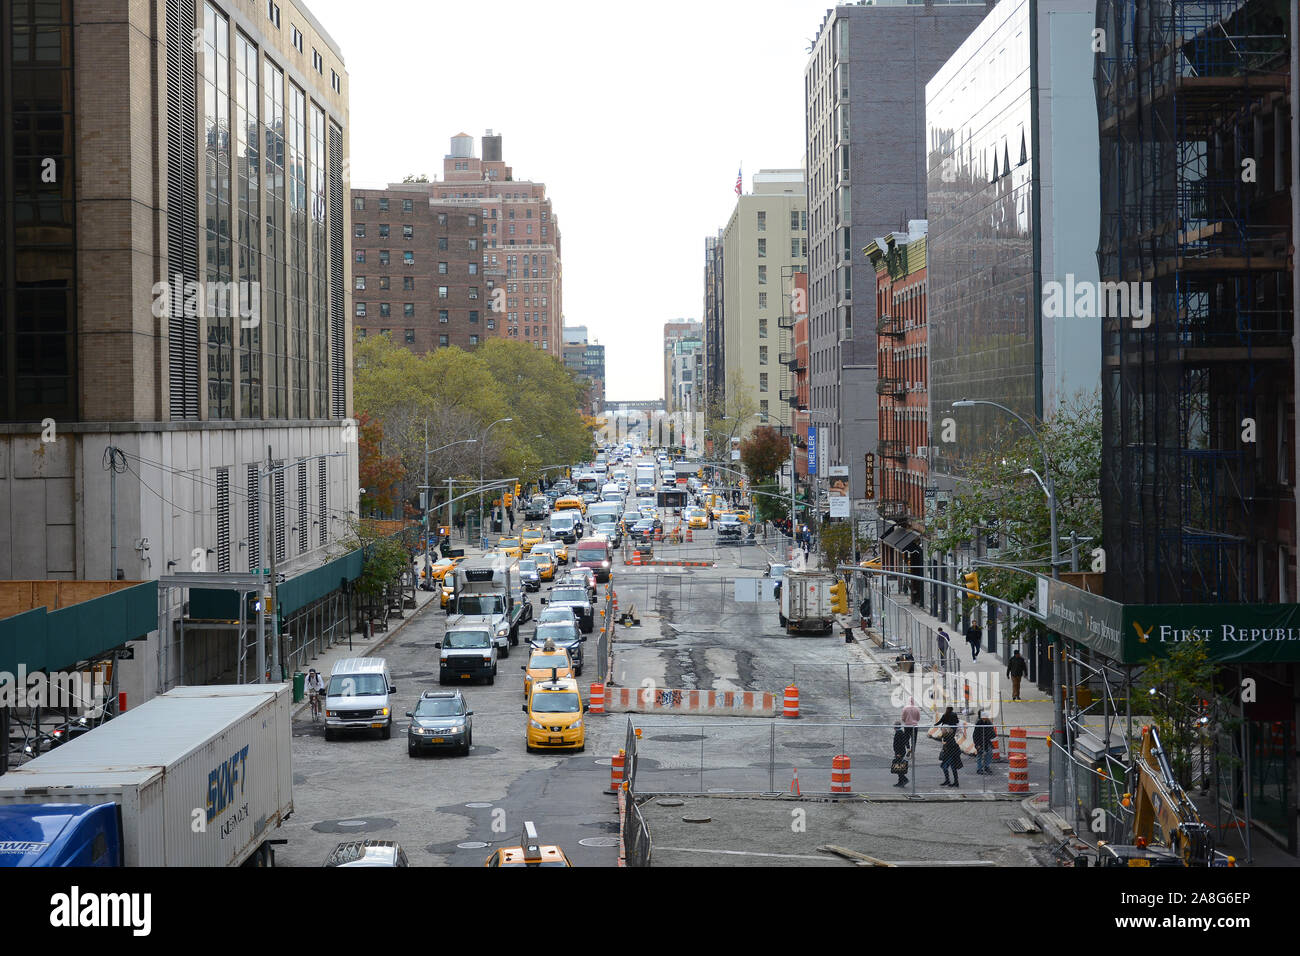 NEW YORK, NY - 05. Nov. 2019: 10th Avenue von der hohen Linie gesehen, mit Autos, Fußgänger und Bau. Stockfoto